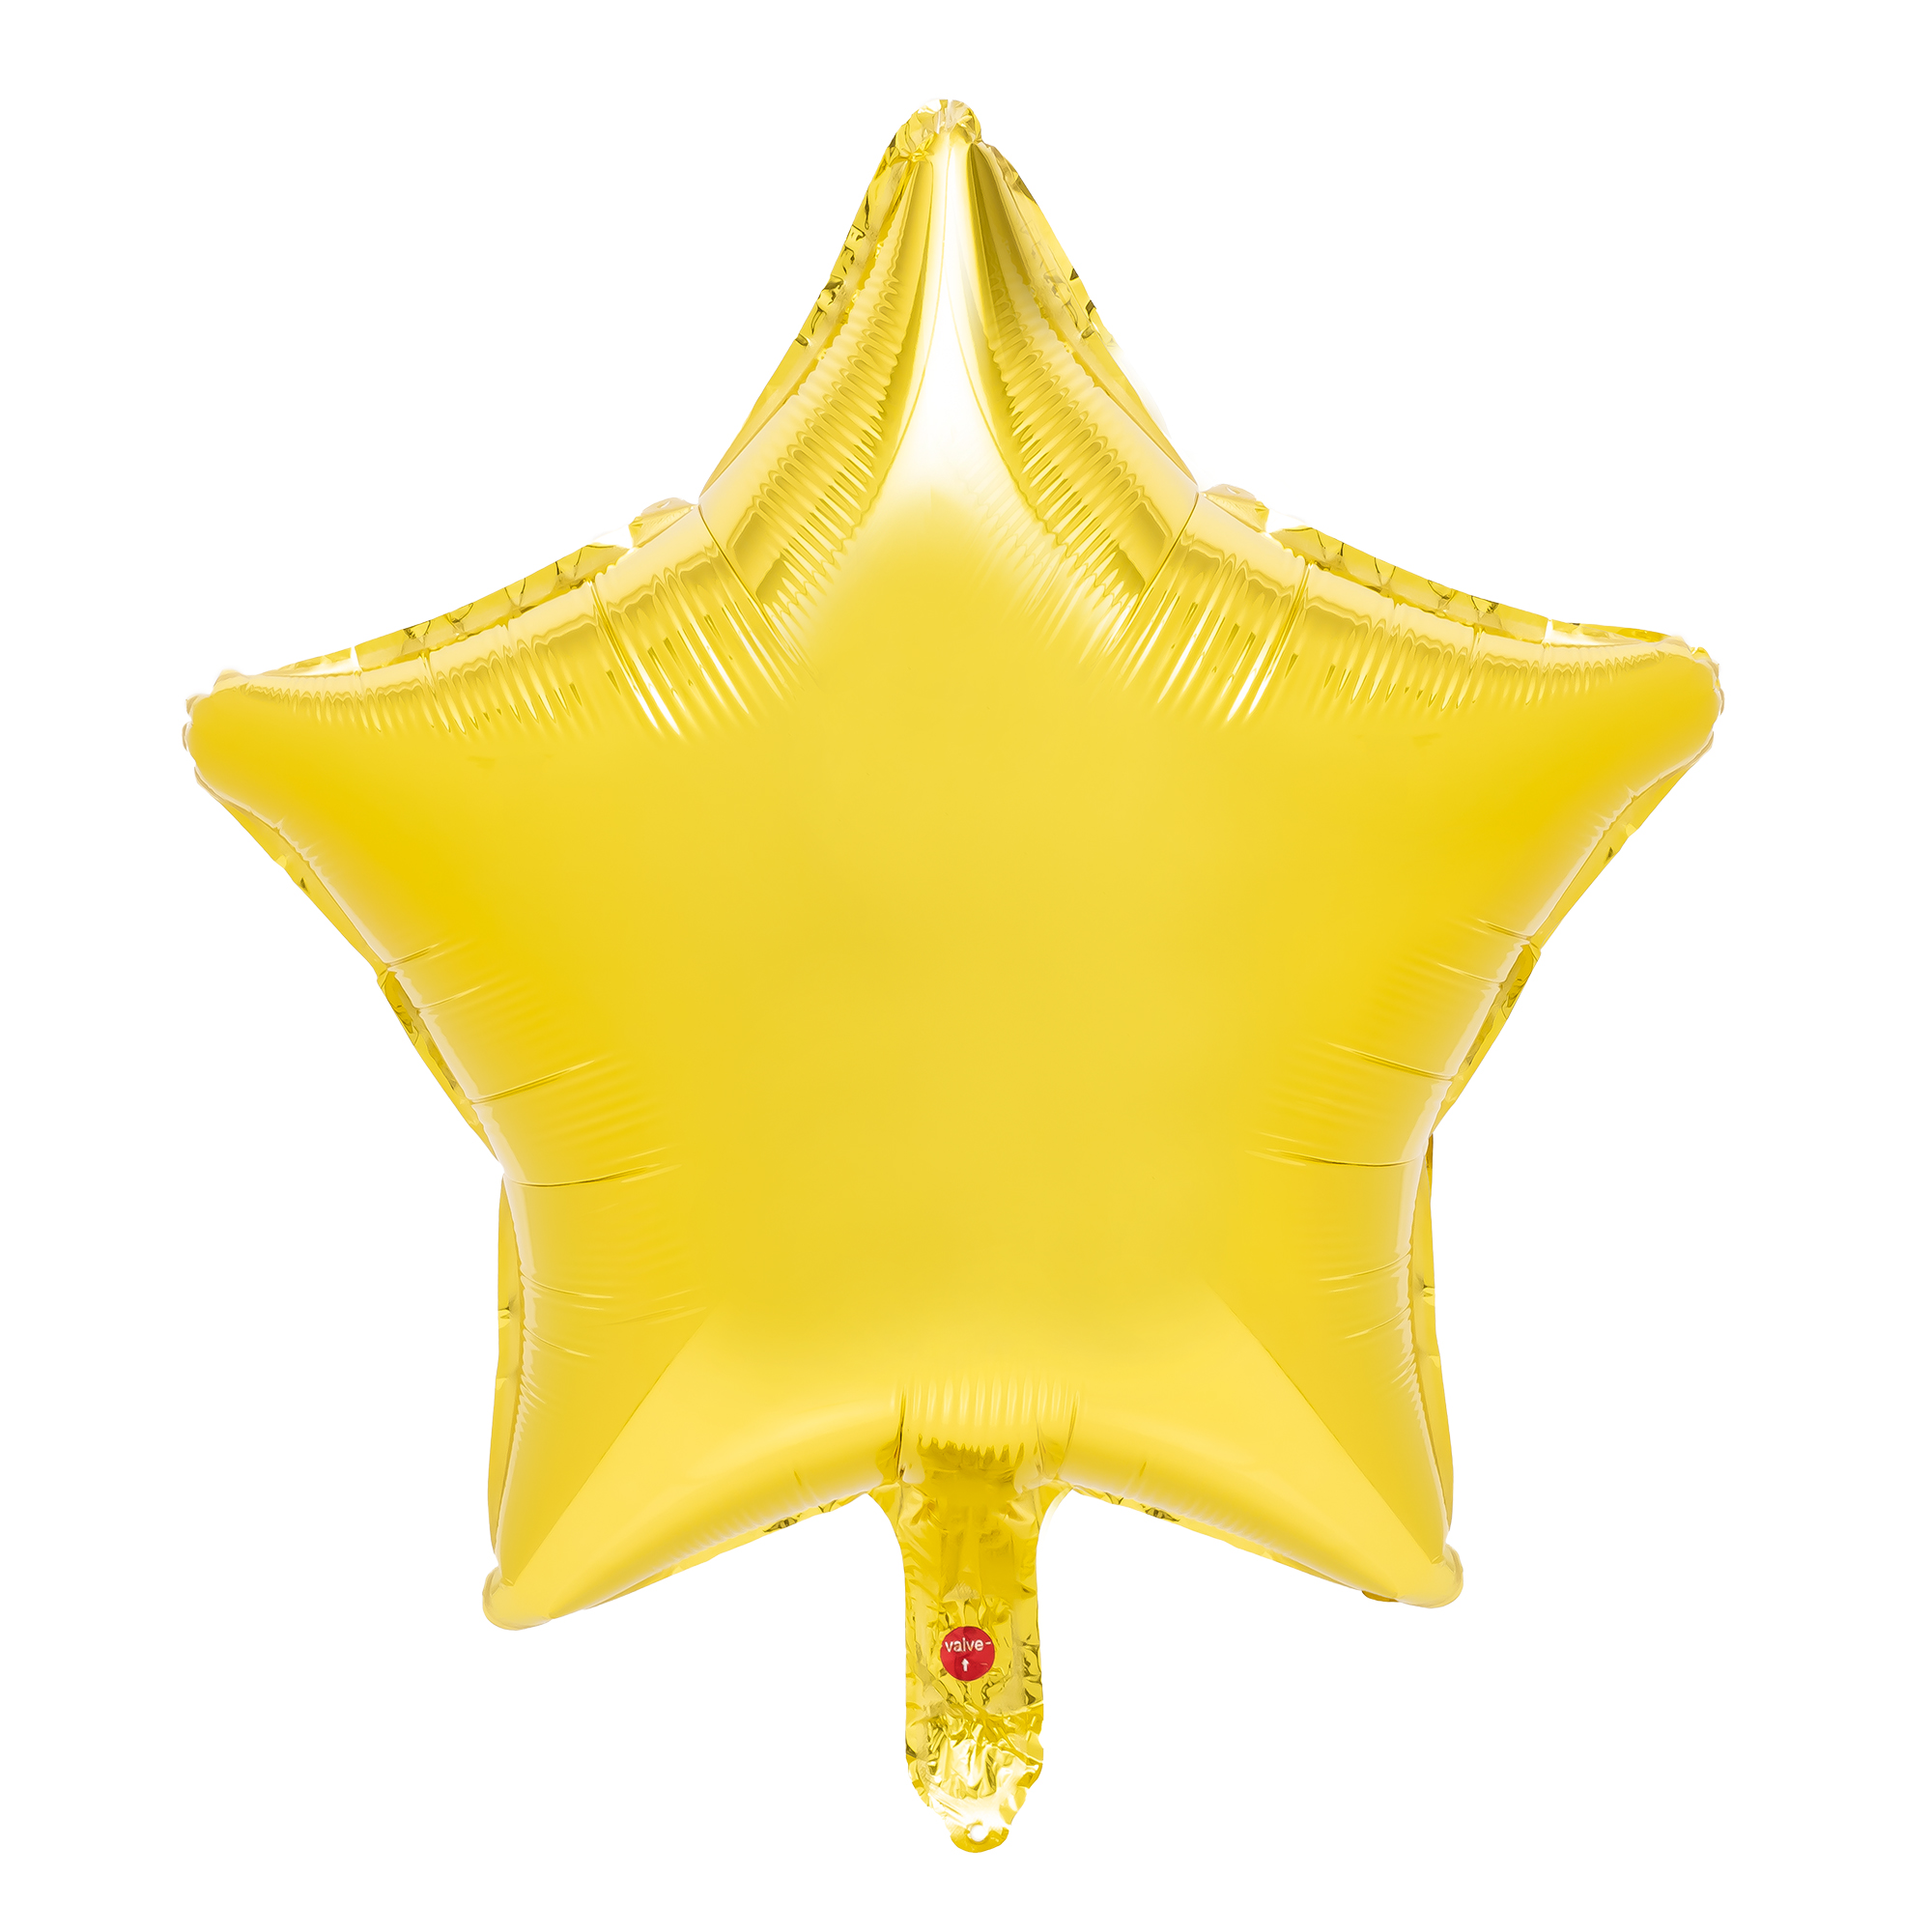 18" Star Mylar Balloon 1pc/bag - Gold